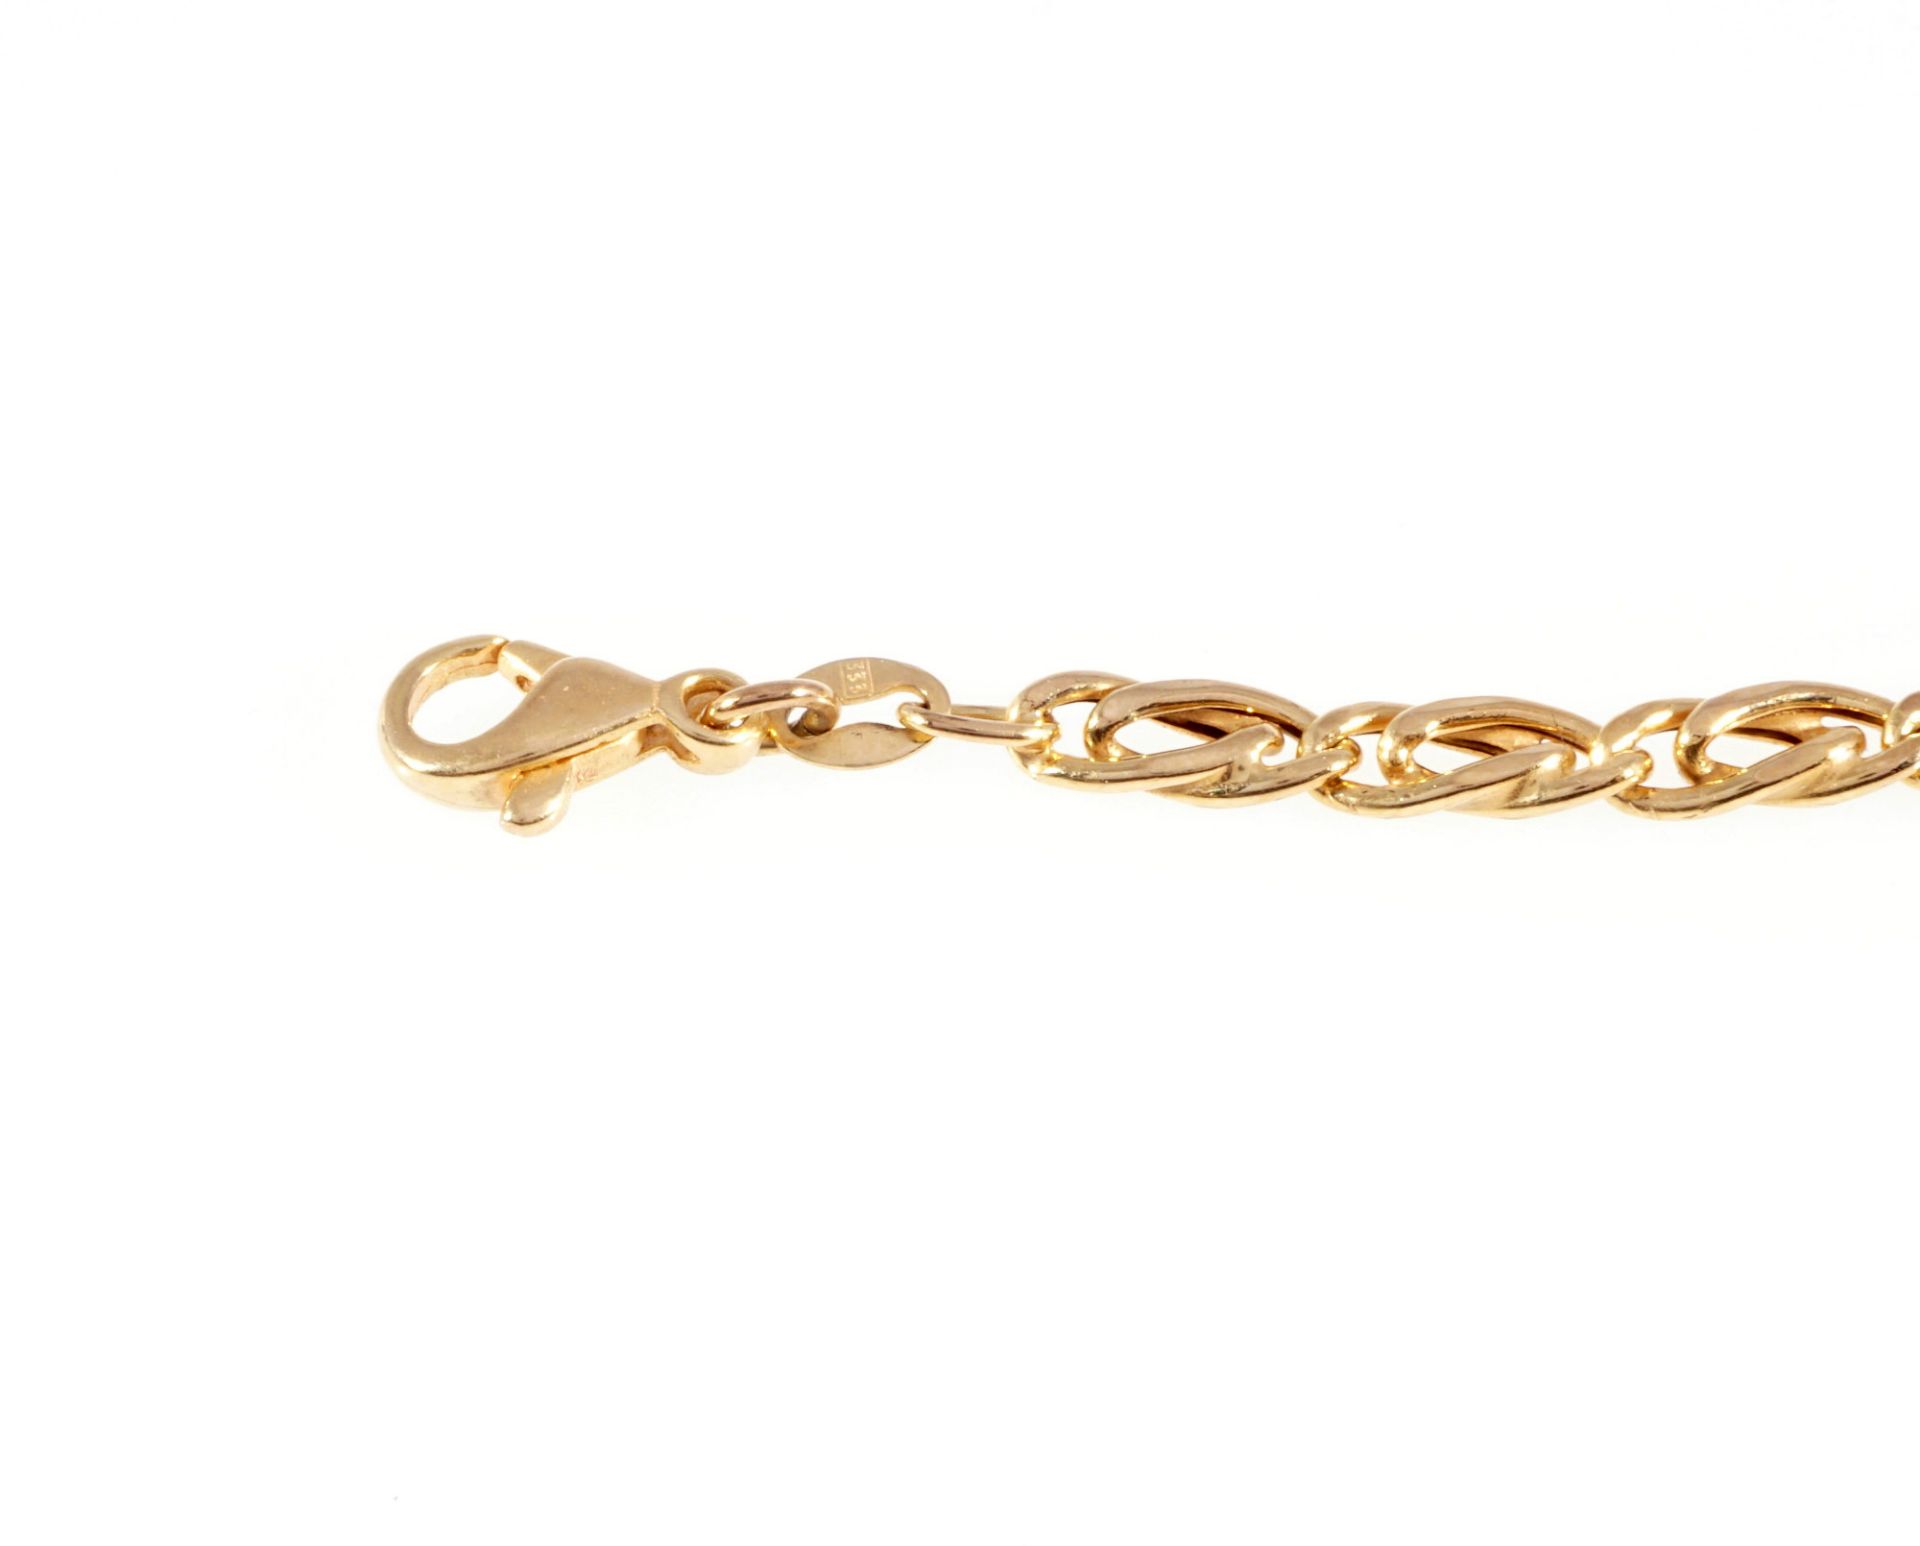 333 gold curb bracelet / necklace, 8K Gold Panzerkette / Halskette, - Image 4 of 4